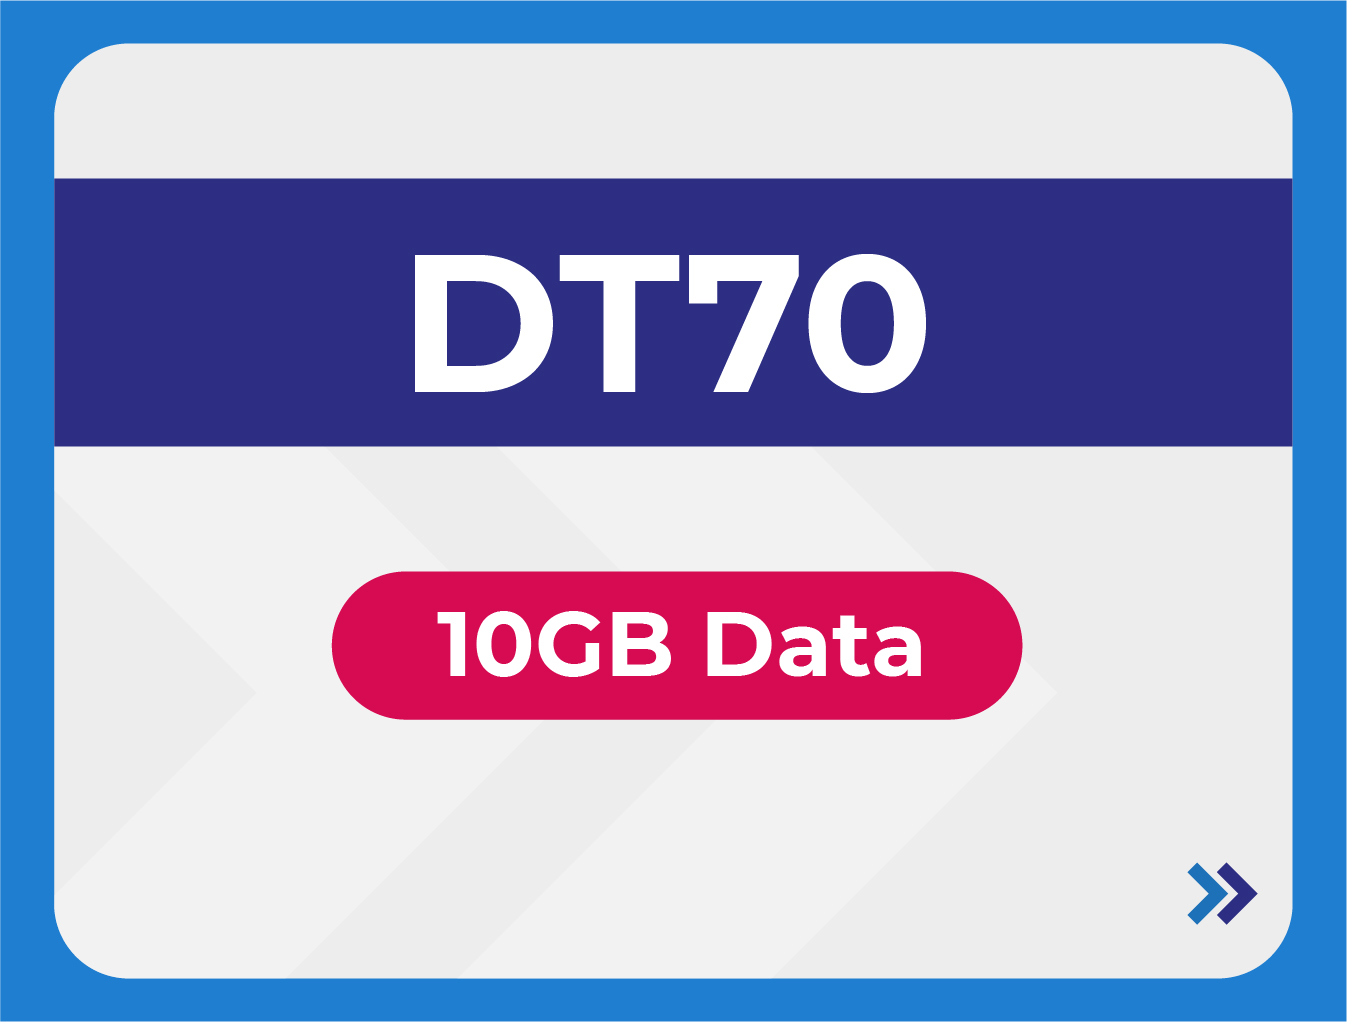 DT70